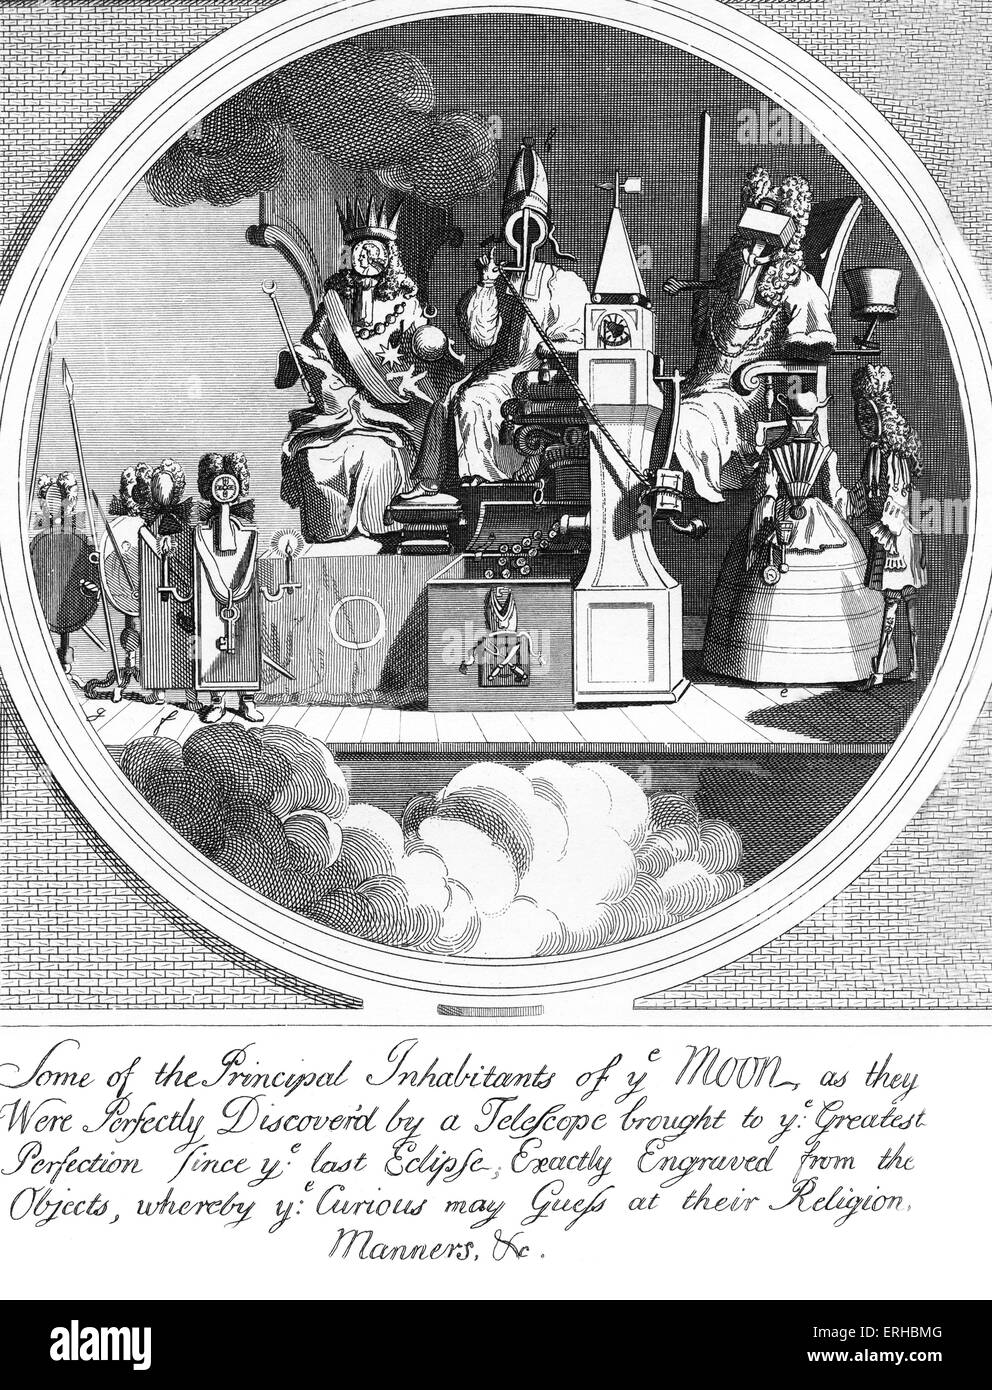 Lizenzgebühren, Episkopat und Gesetz von W. Hogarth 1724 Bildunterschrift lautet: einige der wichtigsten Bewohner von ye Mond, wie sie waren Stockfoto